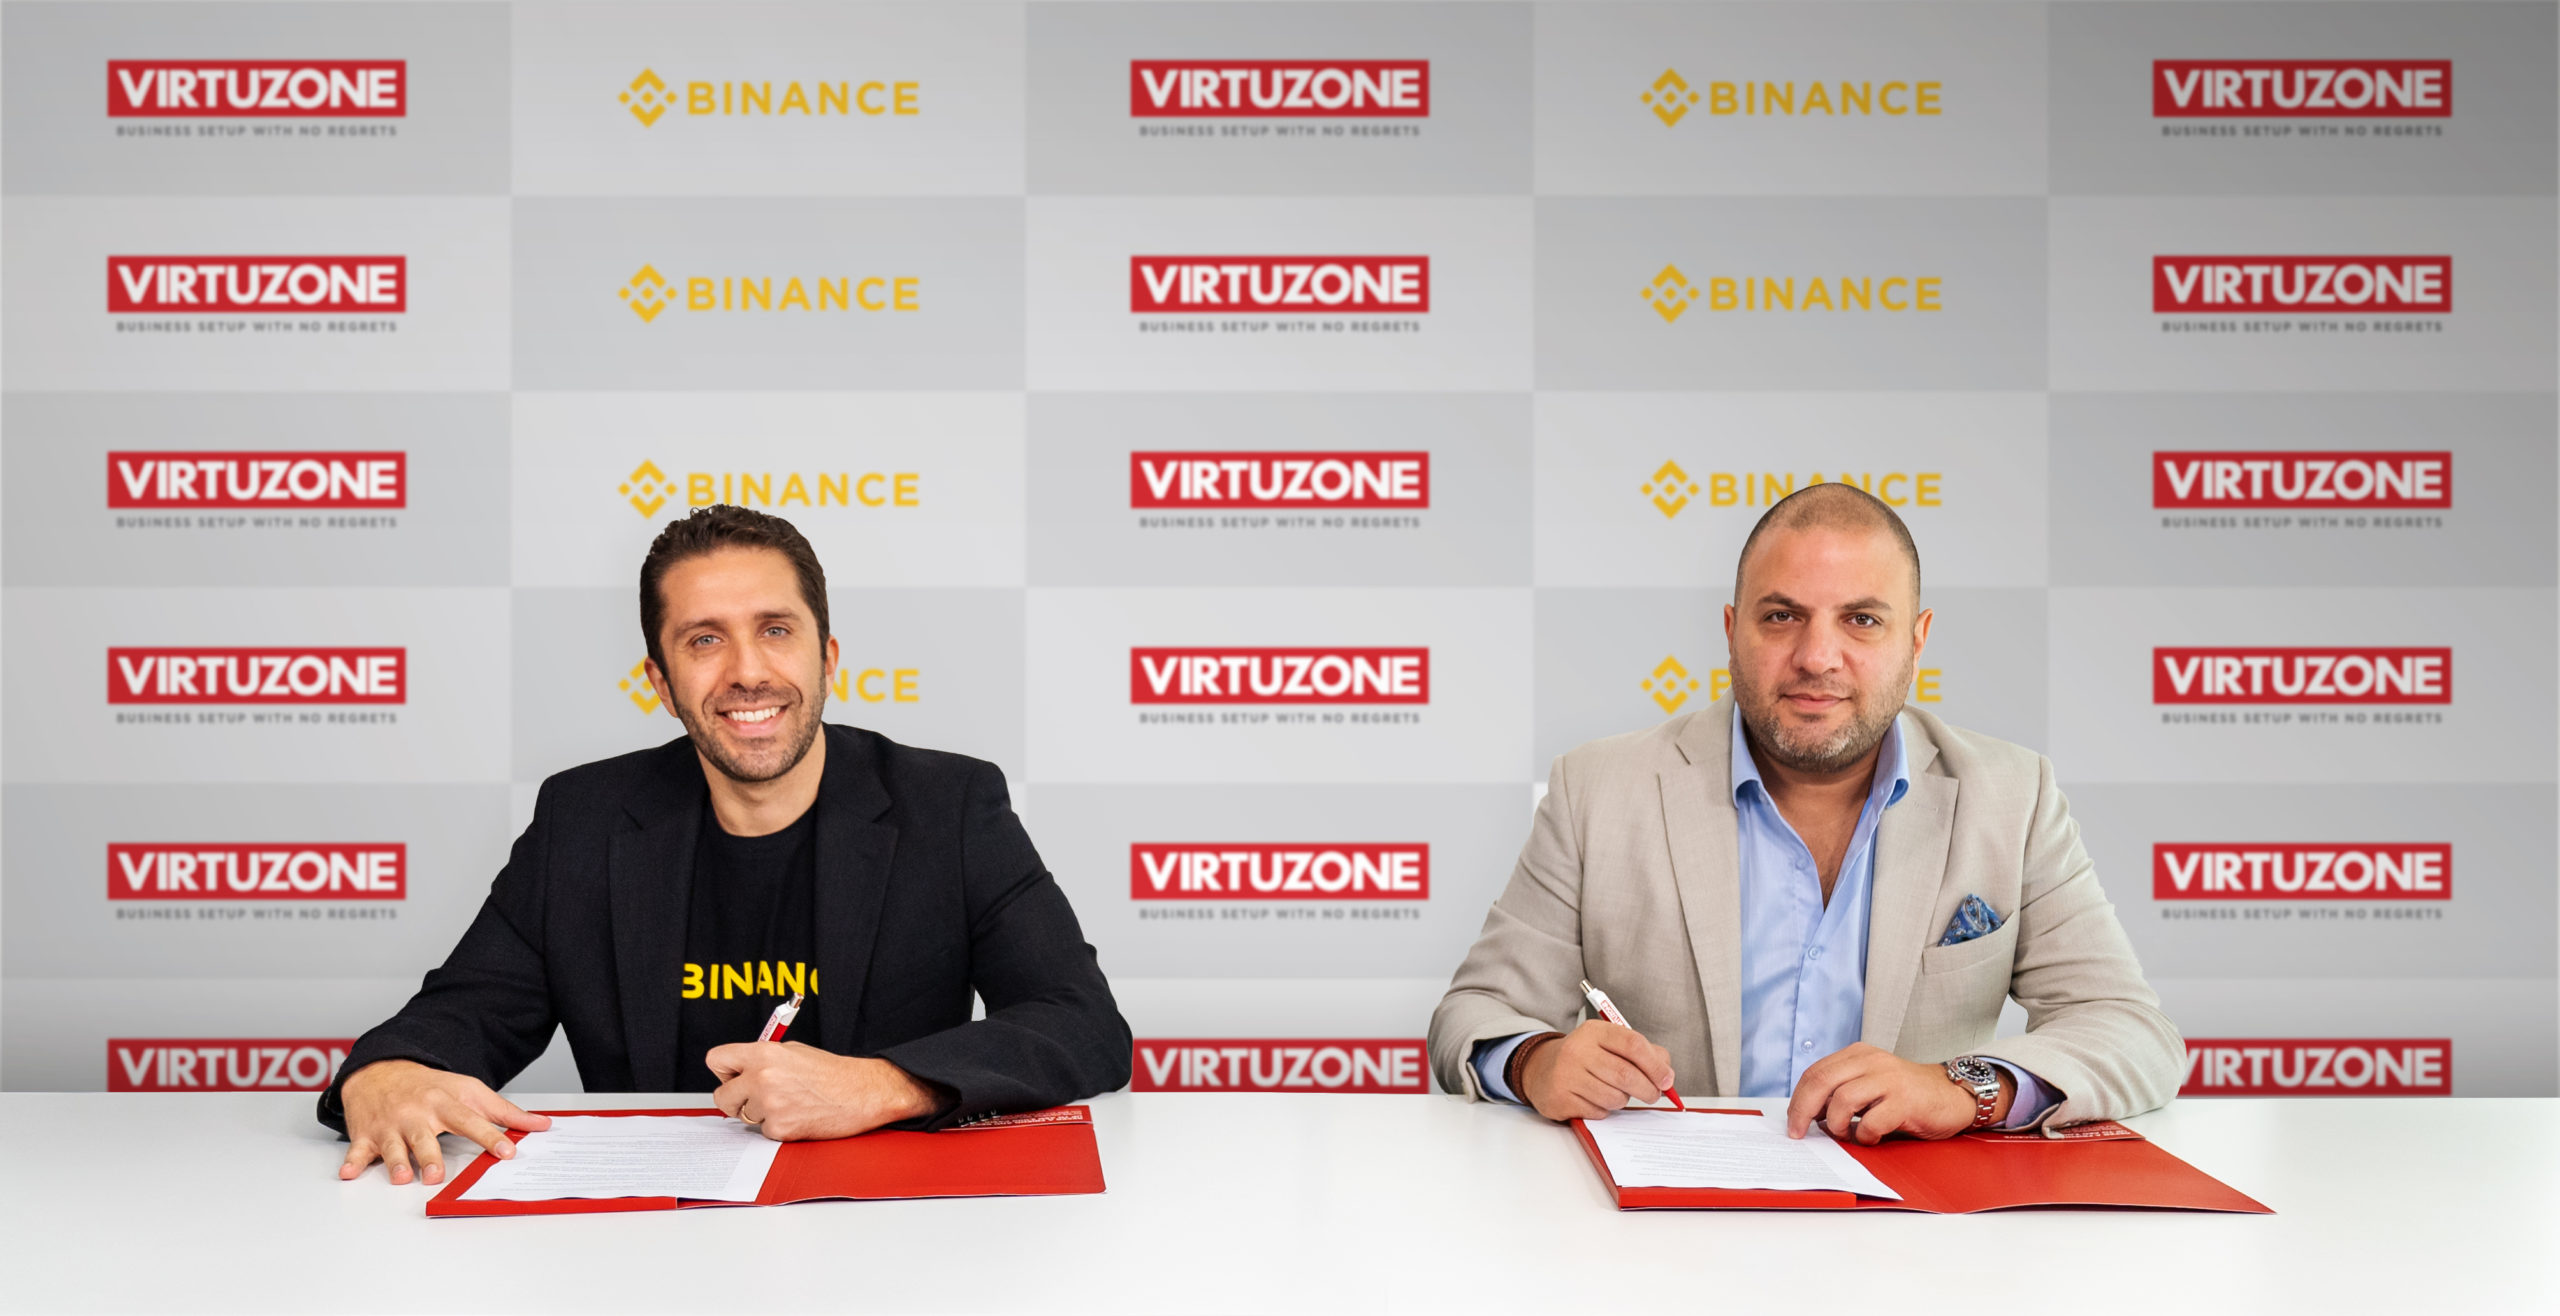 Virtuzone-Binance-partnership